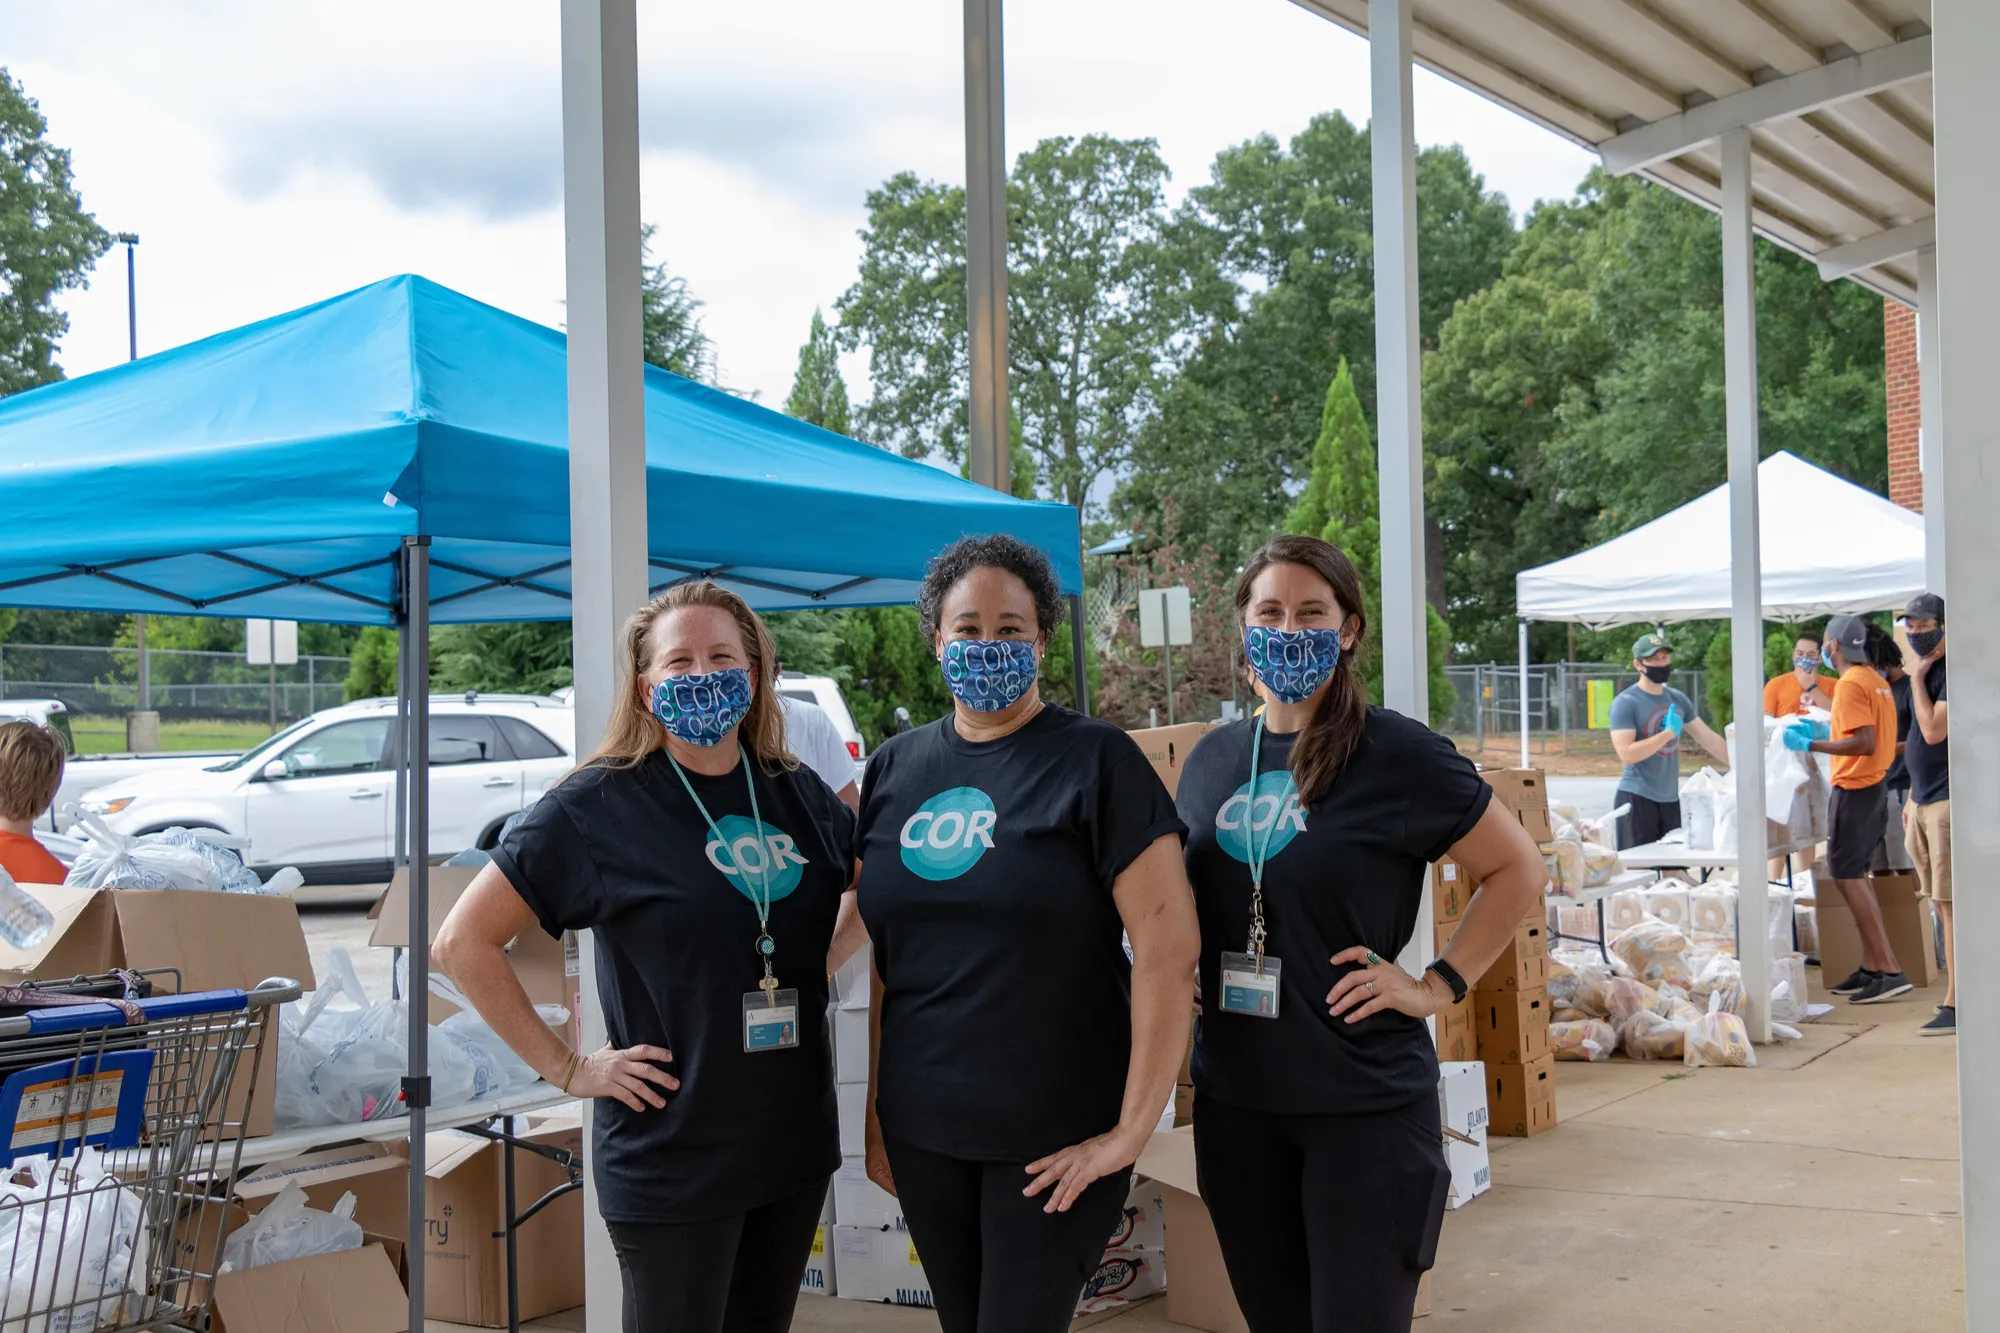 Tres mujeres con máscaras faciales están detrás de una tienda de campaña instalada en un lugar de distribución de alimentos.